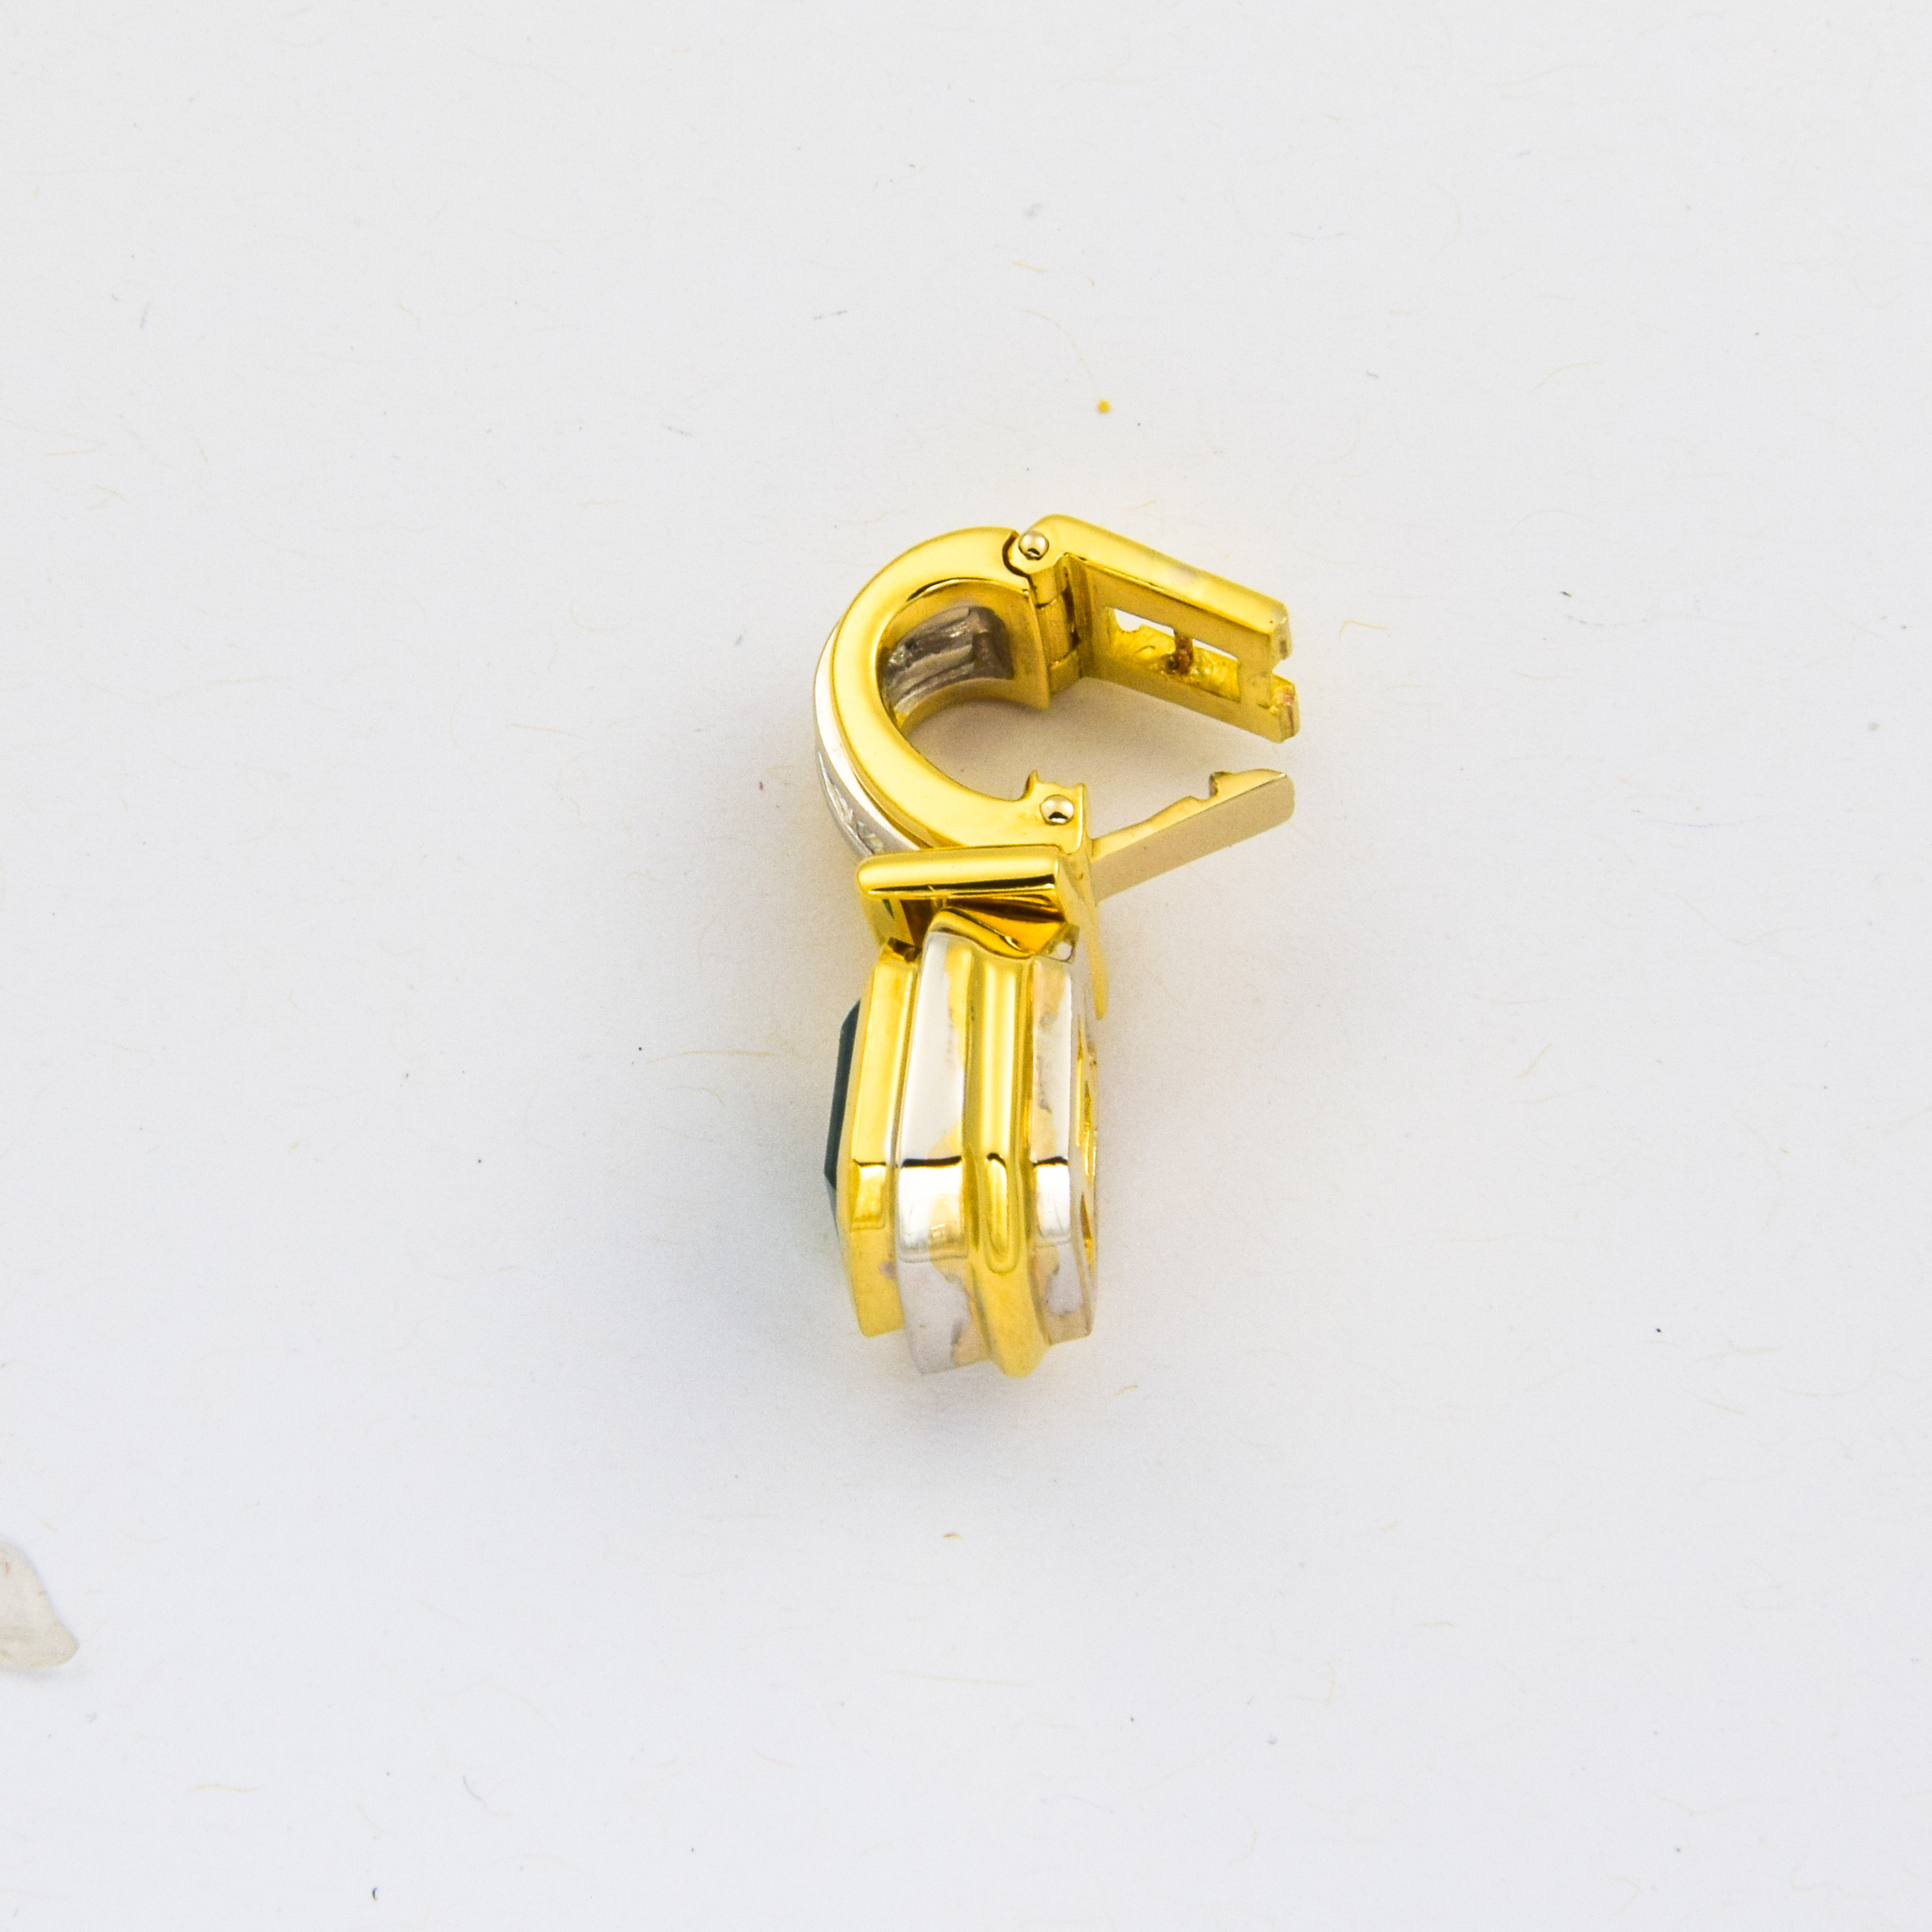 Smaragdanhänger aus 750 Gelb- und Weißgold mit Diamant, nachhaltiger second hand Schmuck perfekt aufgearbeitet